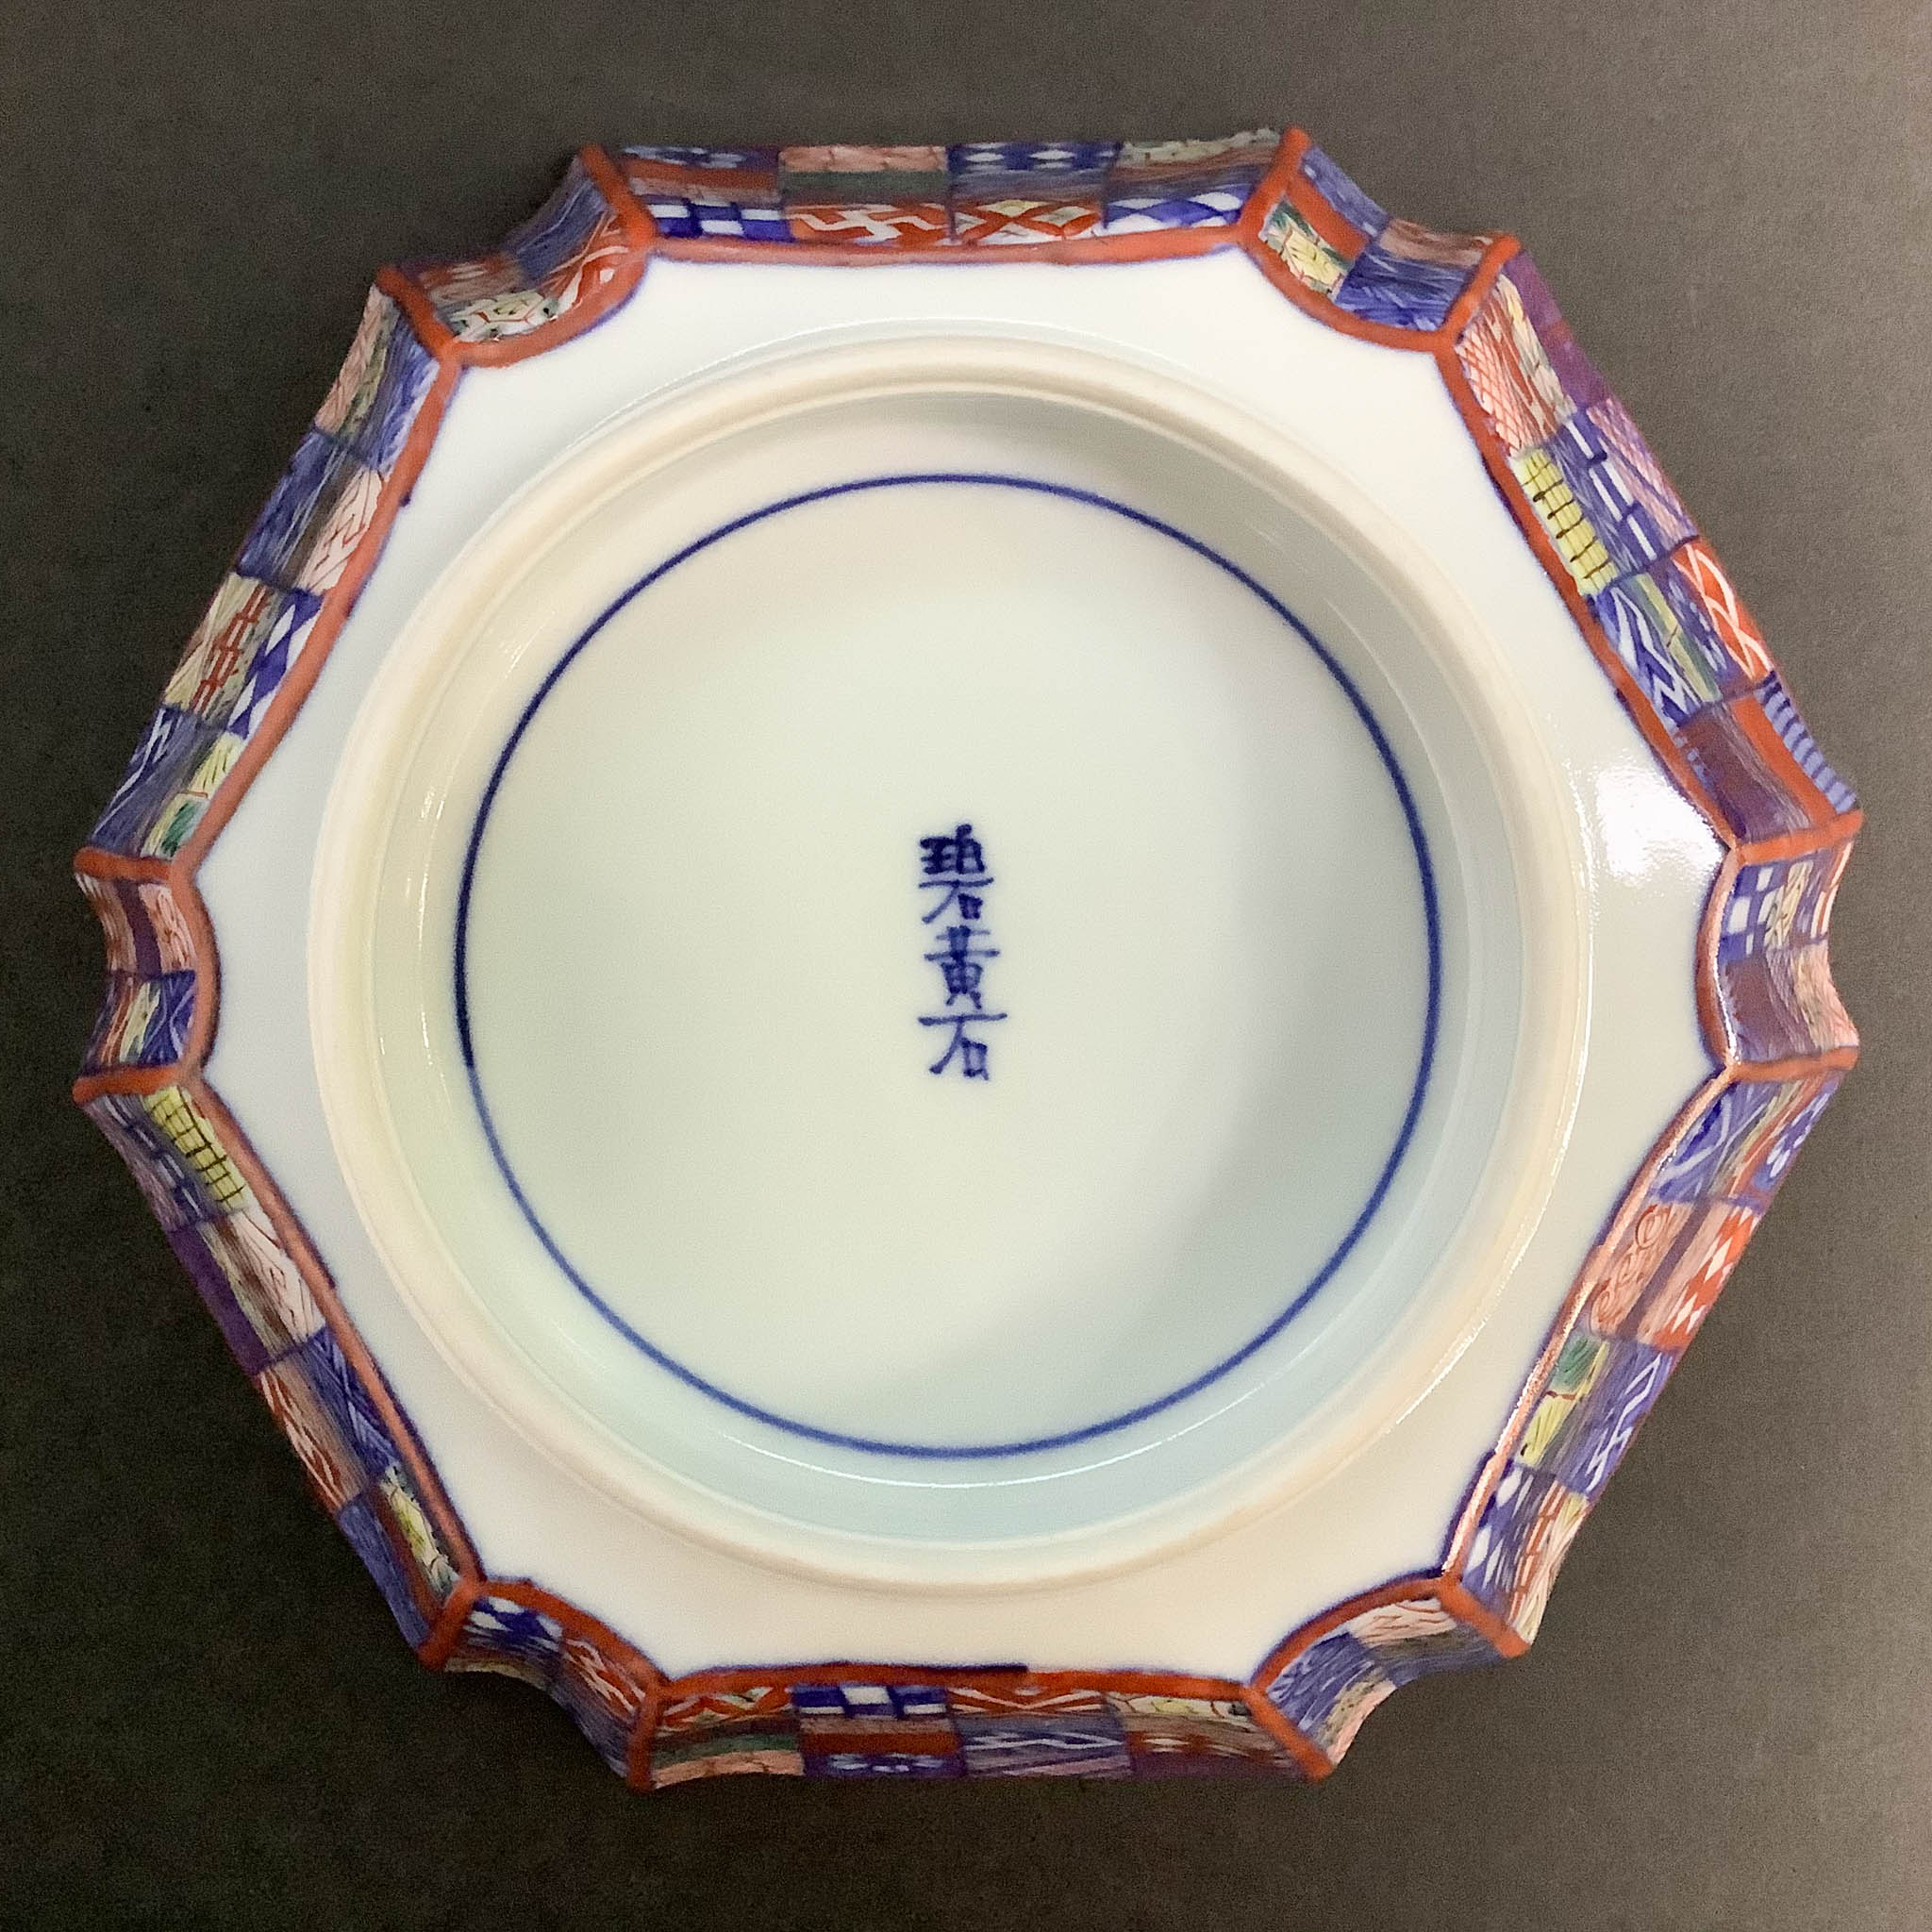 京焼 | 桝色小紋 | 柊型鉢 | 碧黄石窯